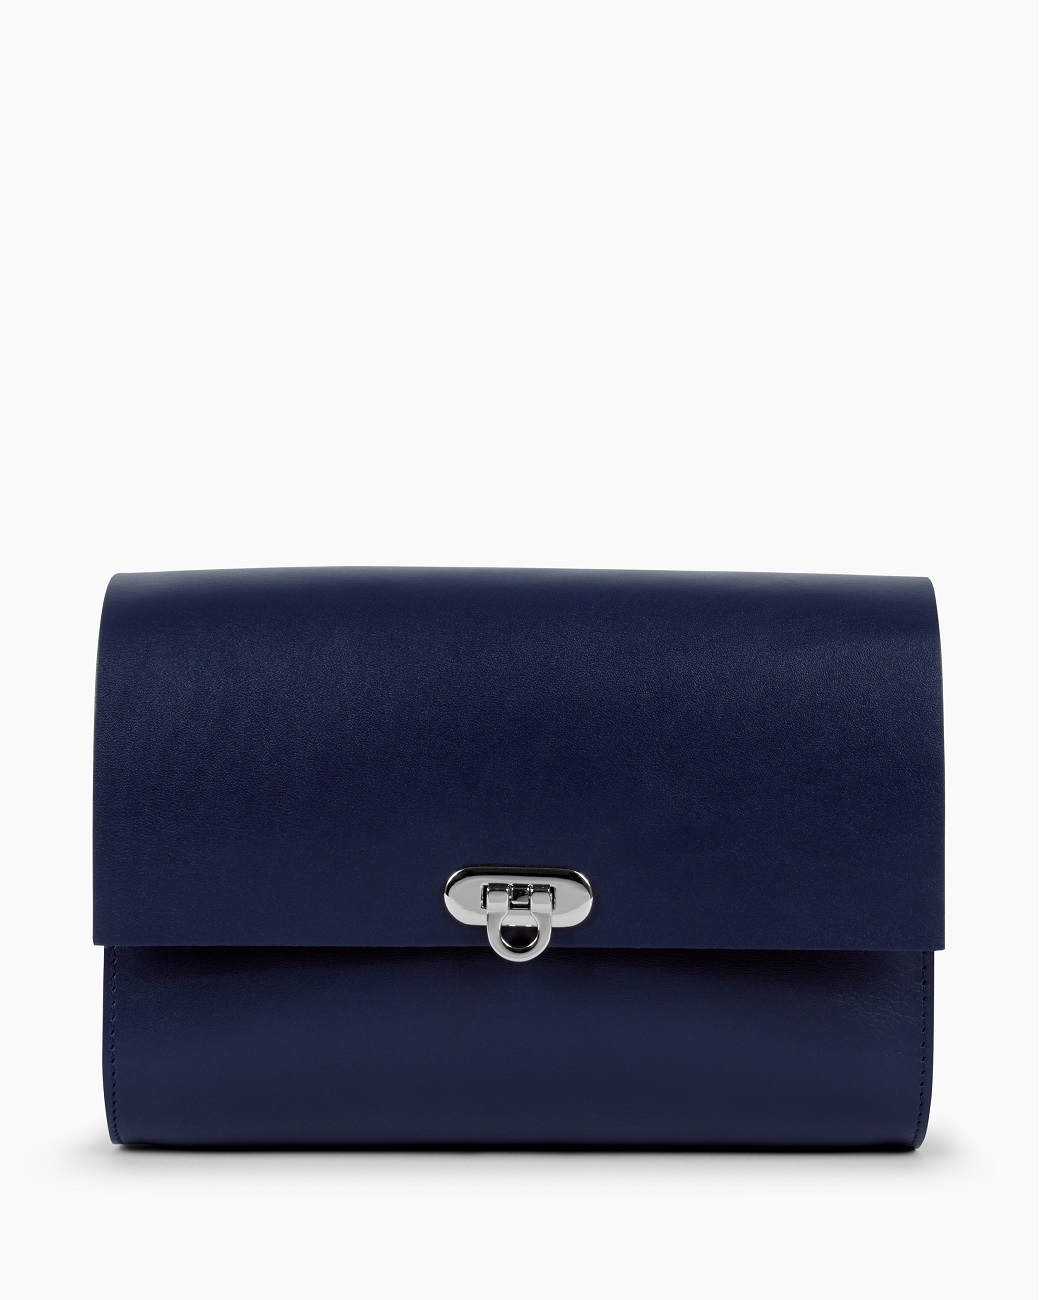 Женская кожаная сумка через плечо синяя A008 sapphire